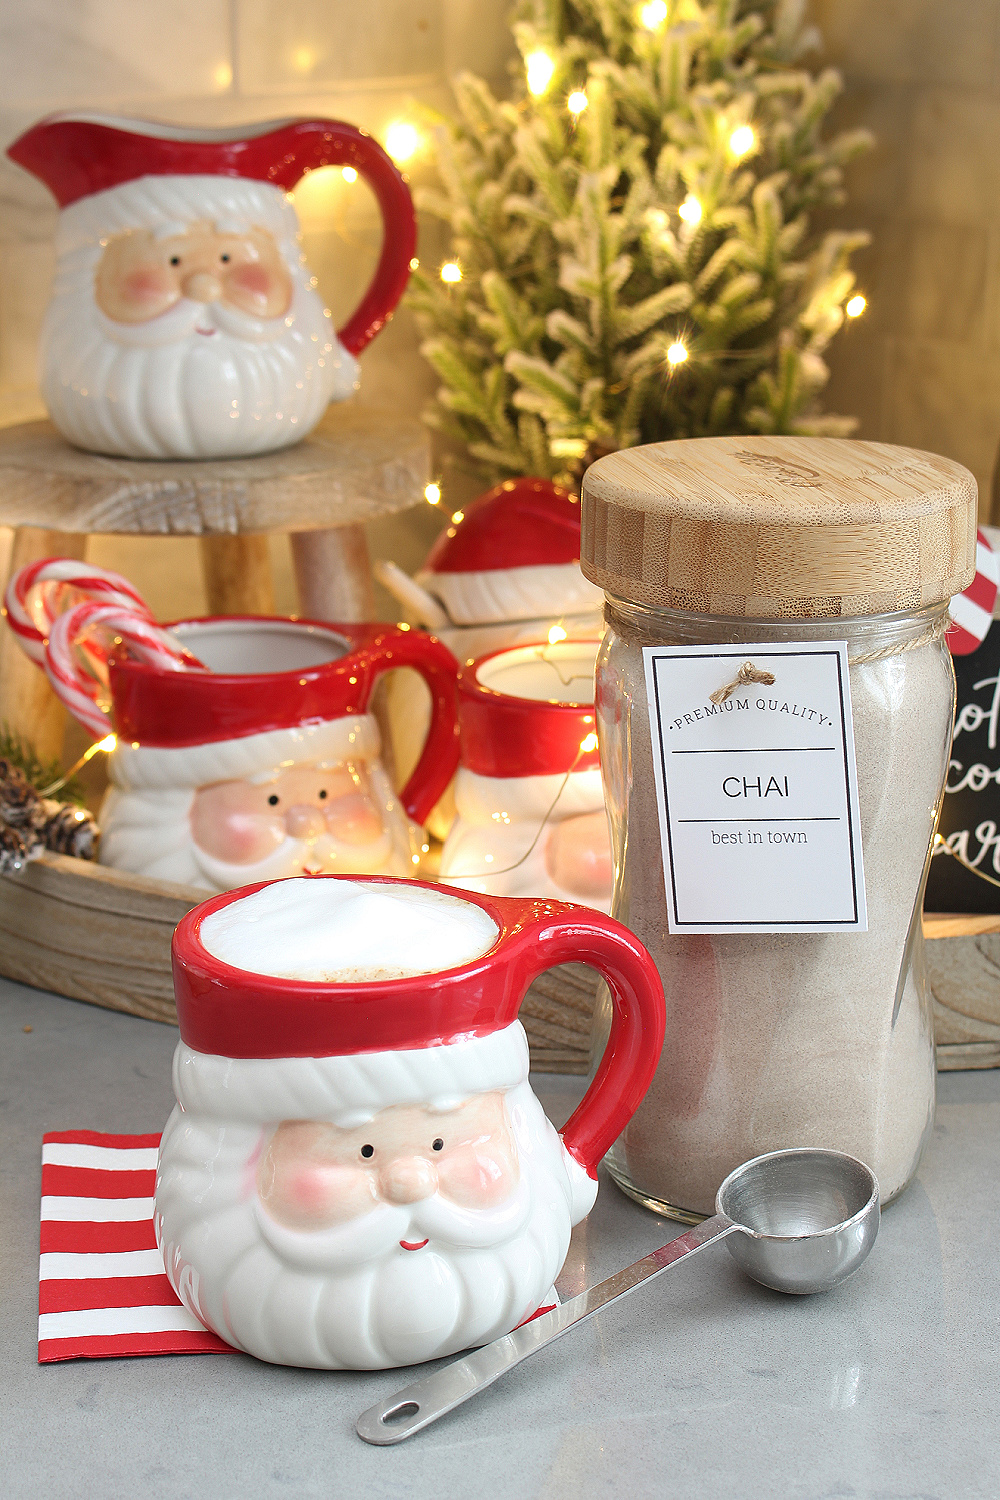 Hot beverage bar with chai latte and Santa mug.